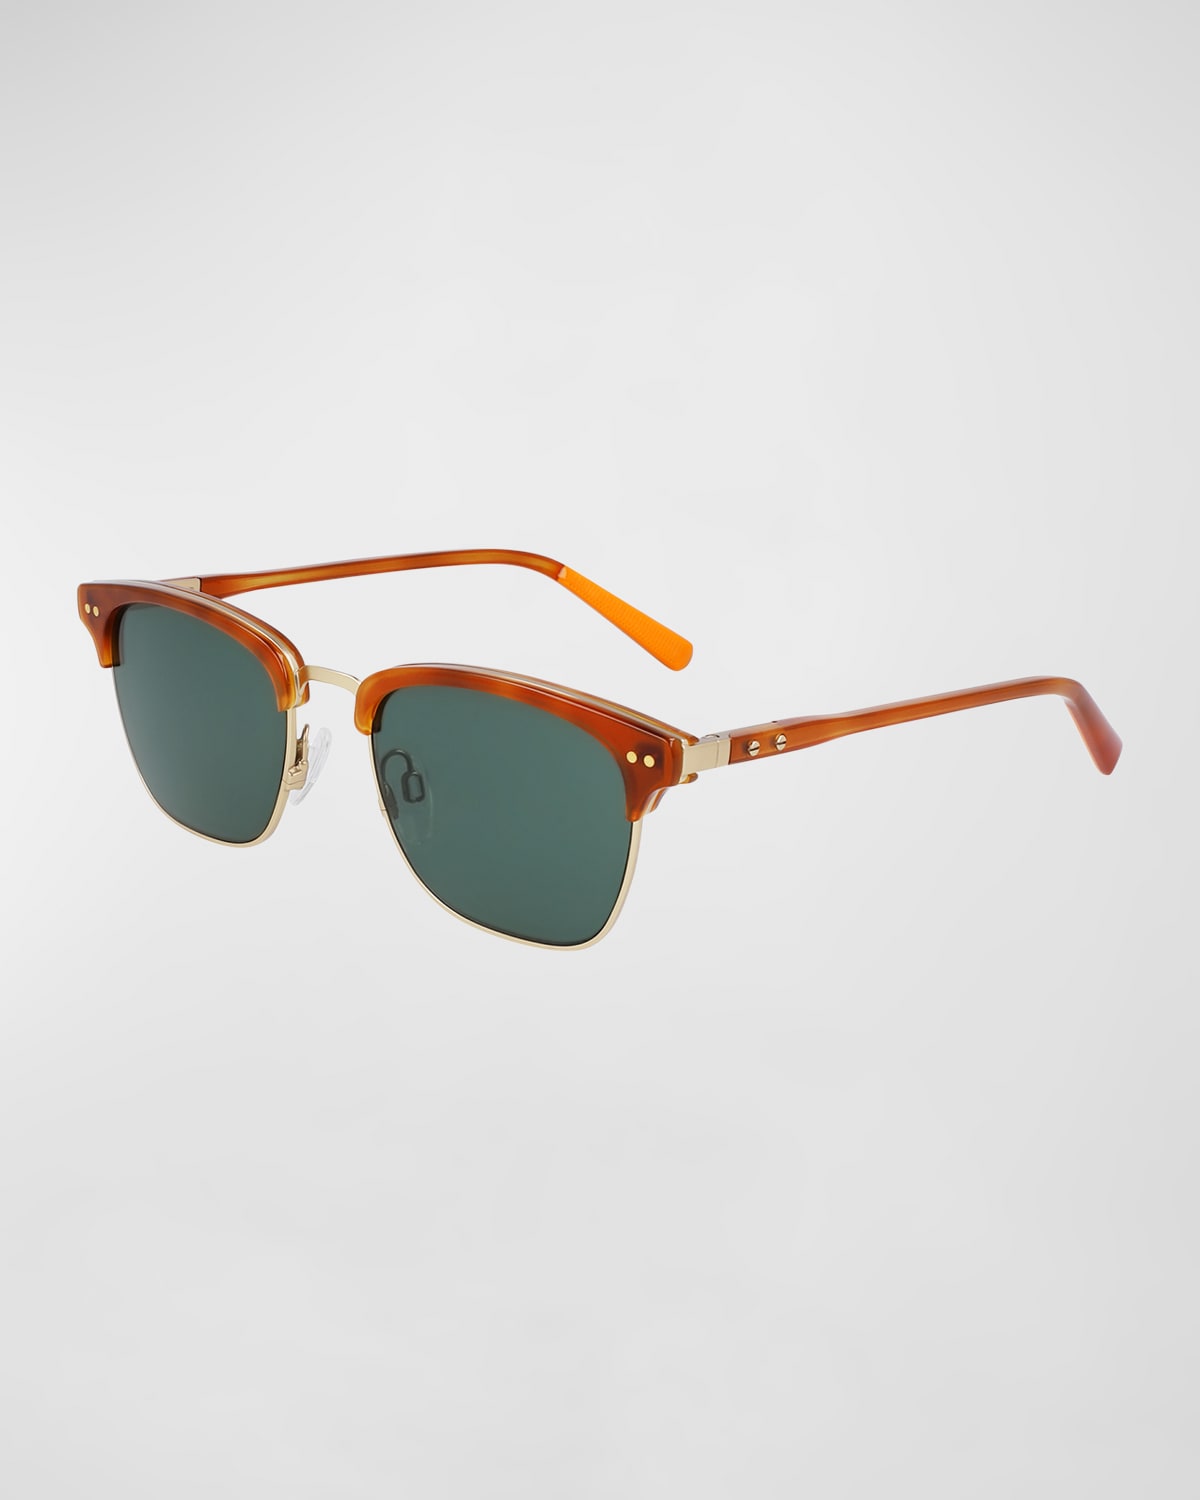 Men's Half-Rim Square Sunglasses